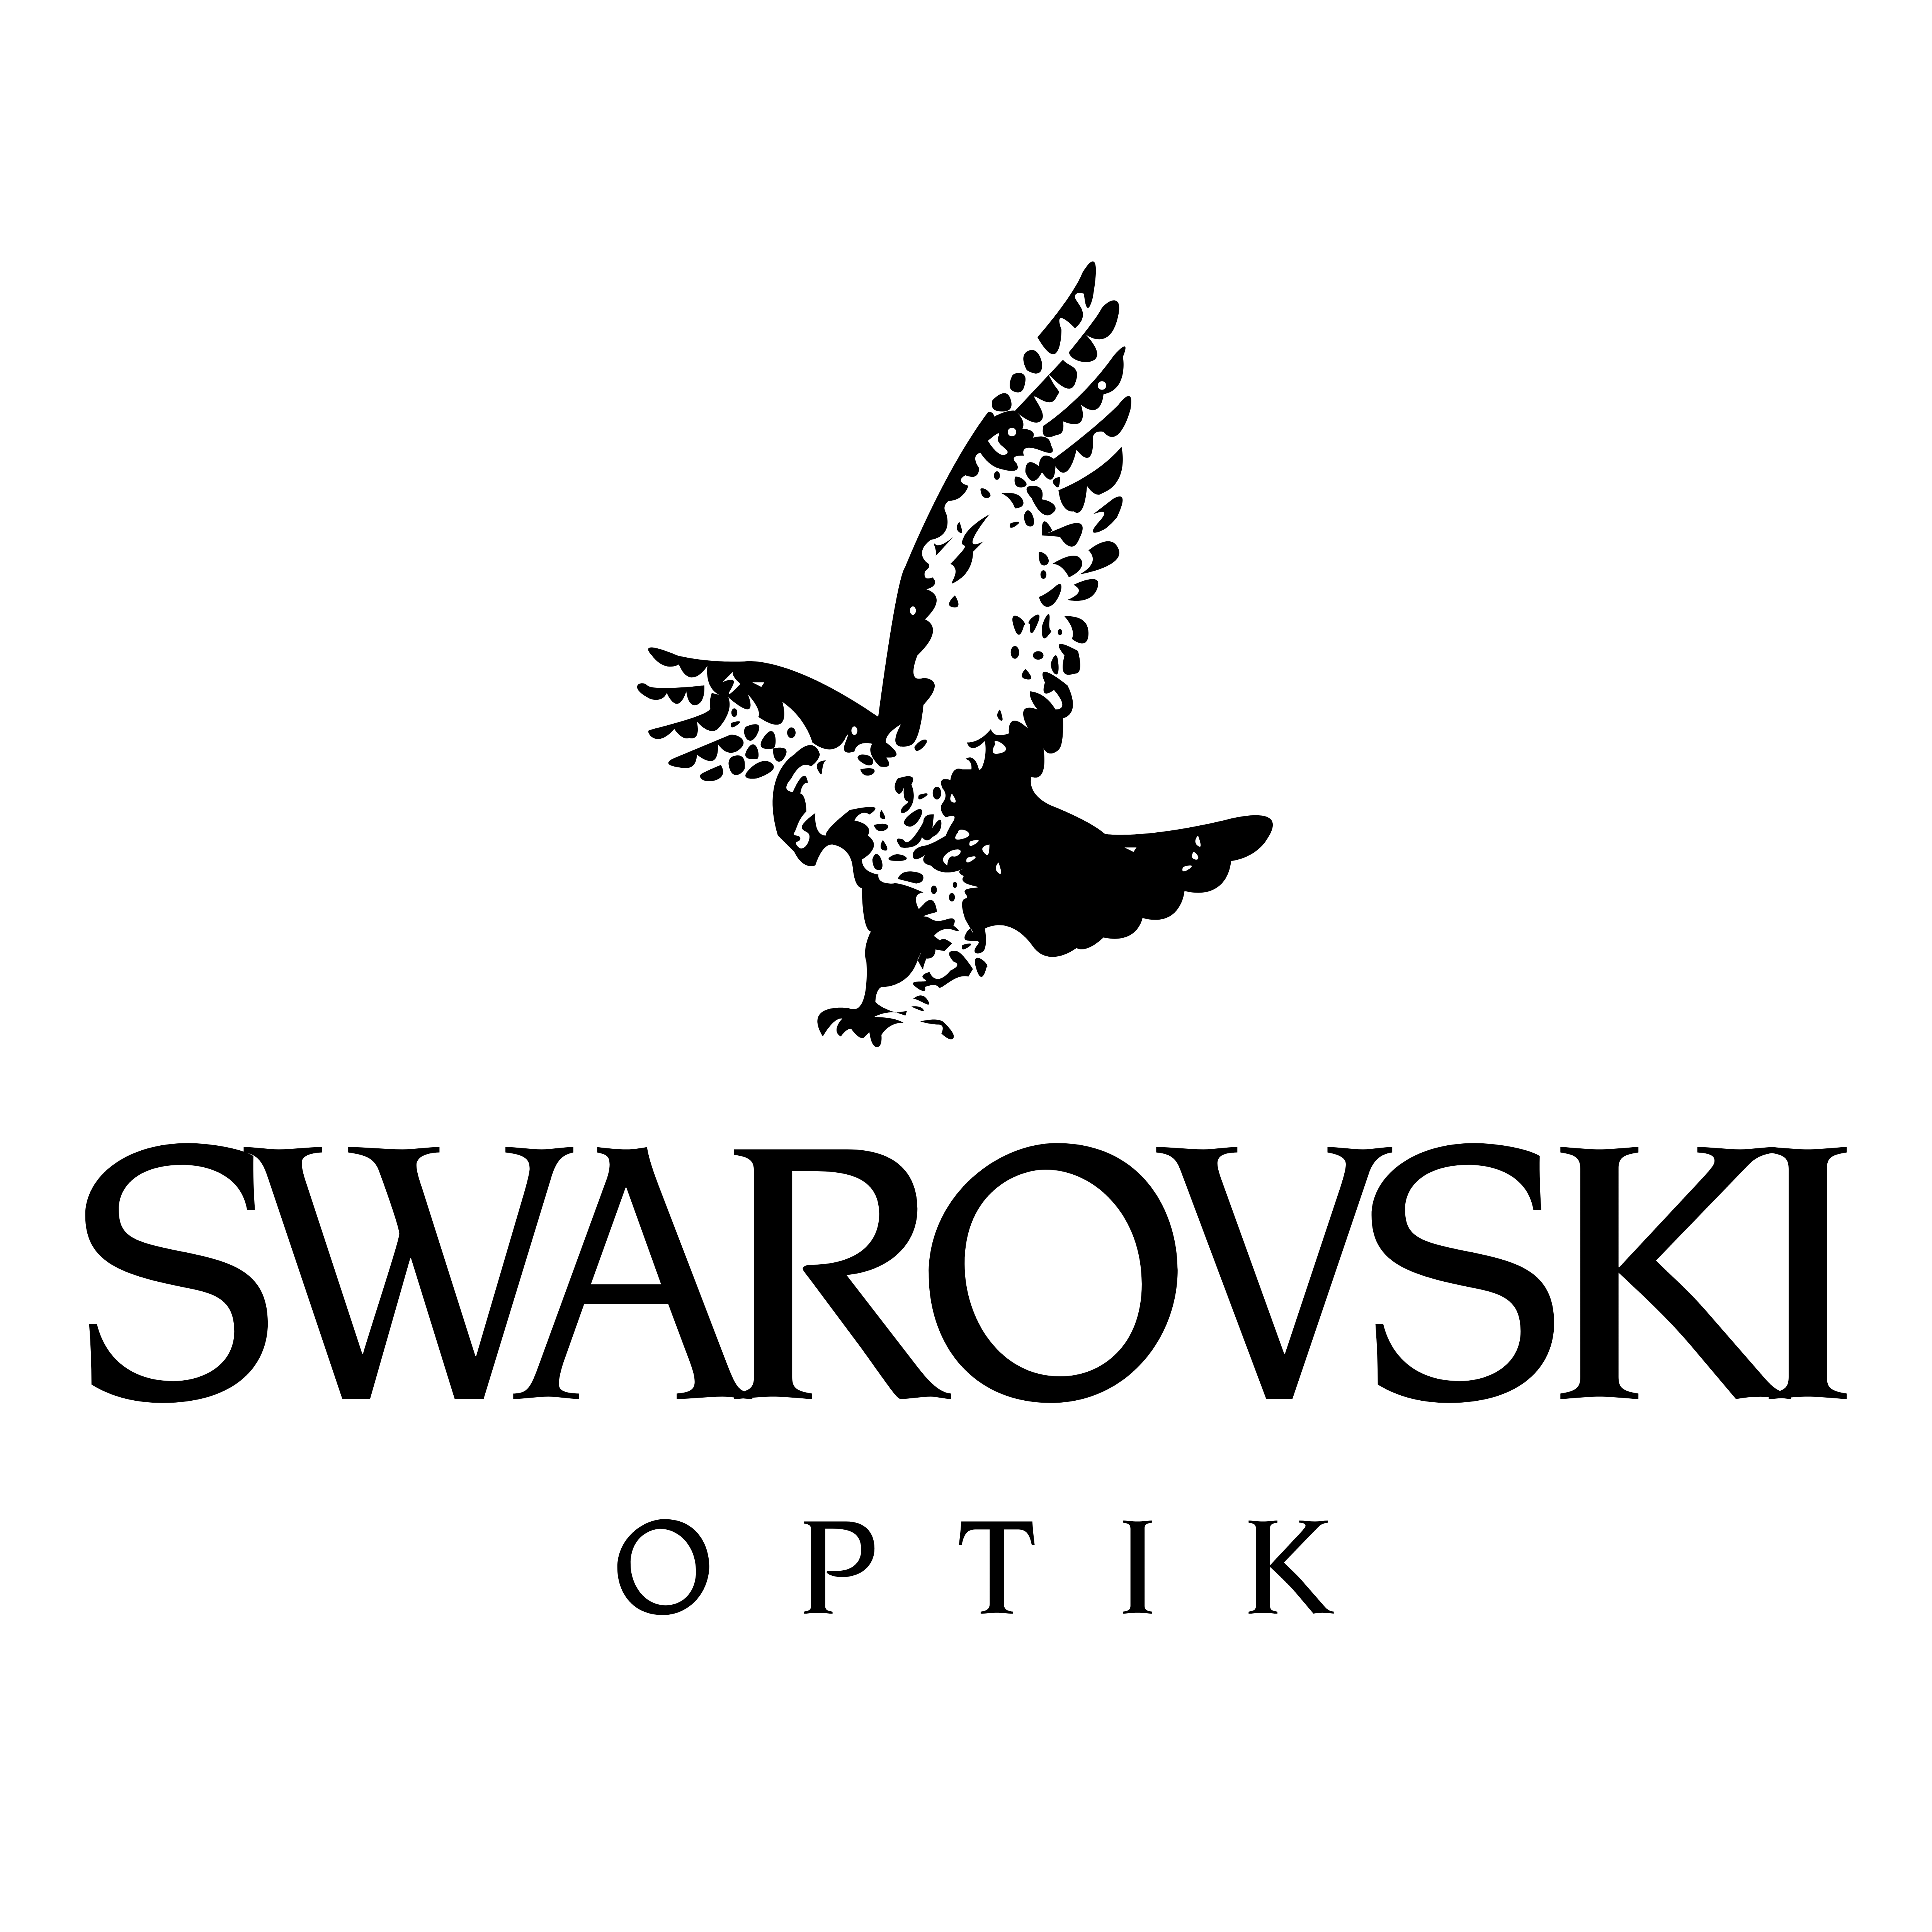 Swarovski – Logos Download - Swarovski, Transparent background PNG HD thumbnail